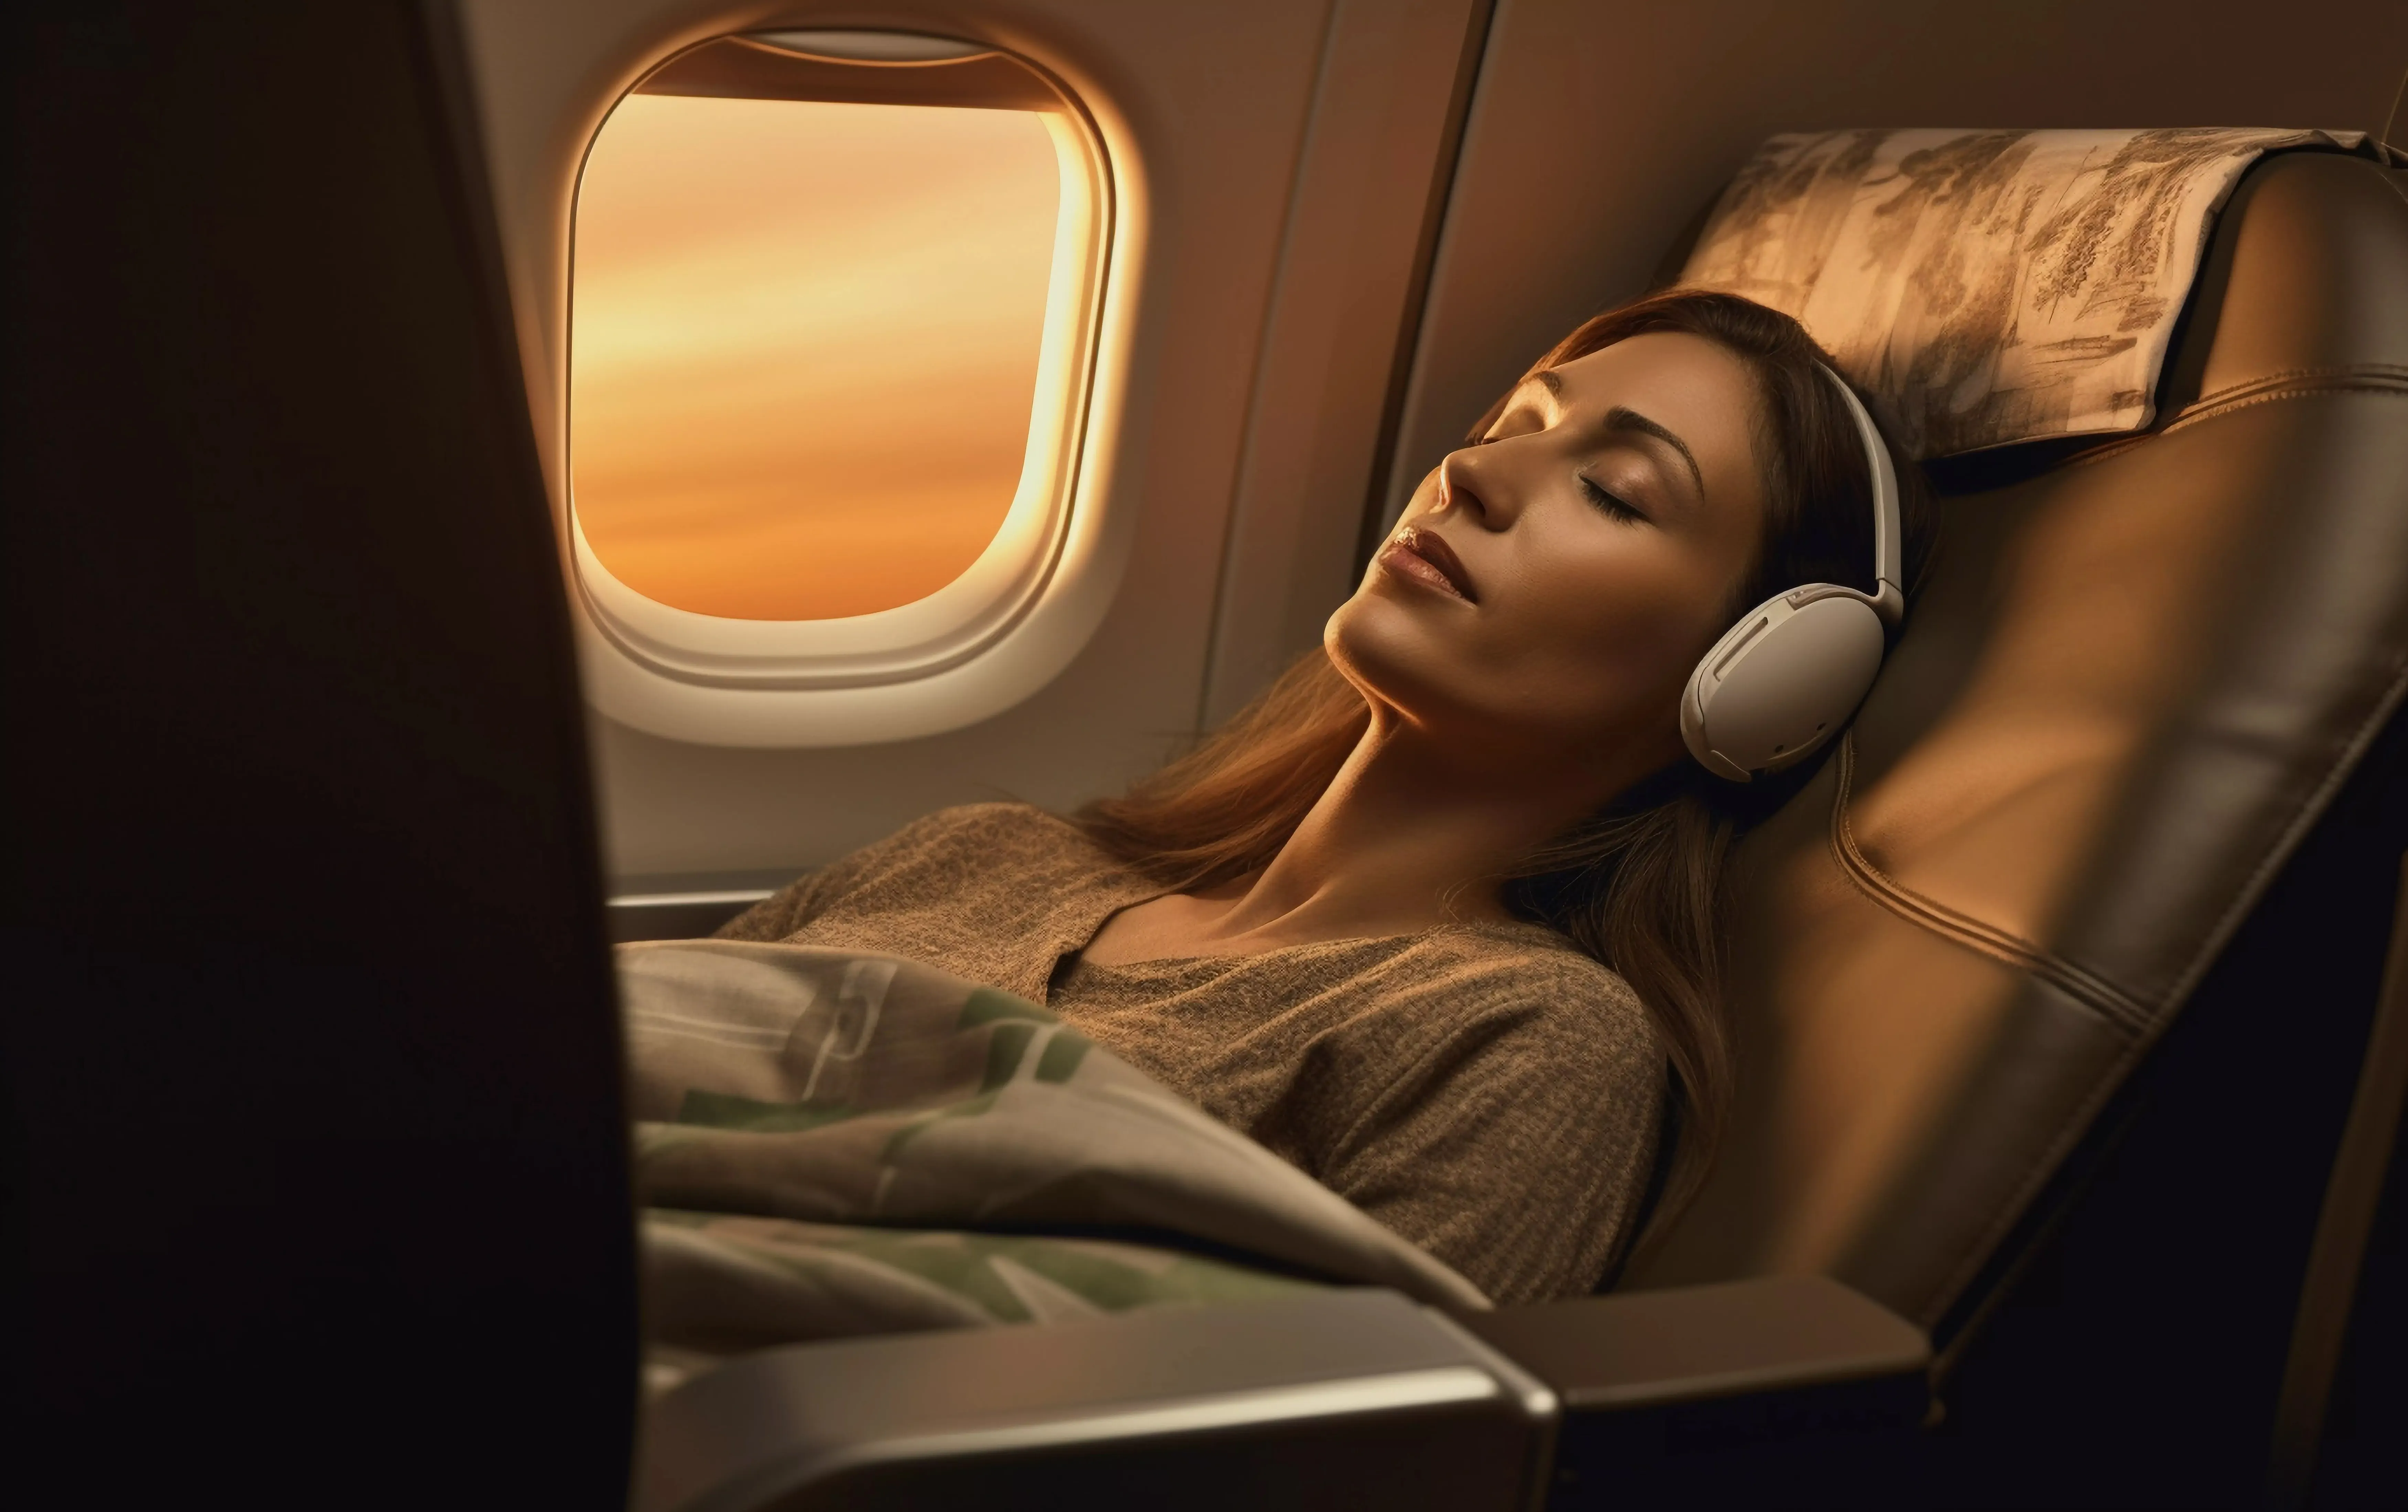 飛行機で寝ている女性